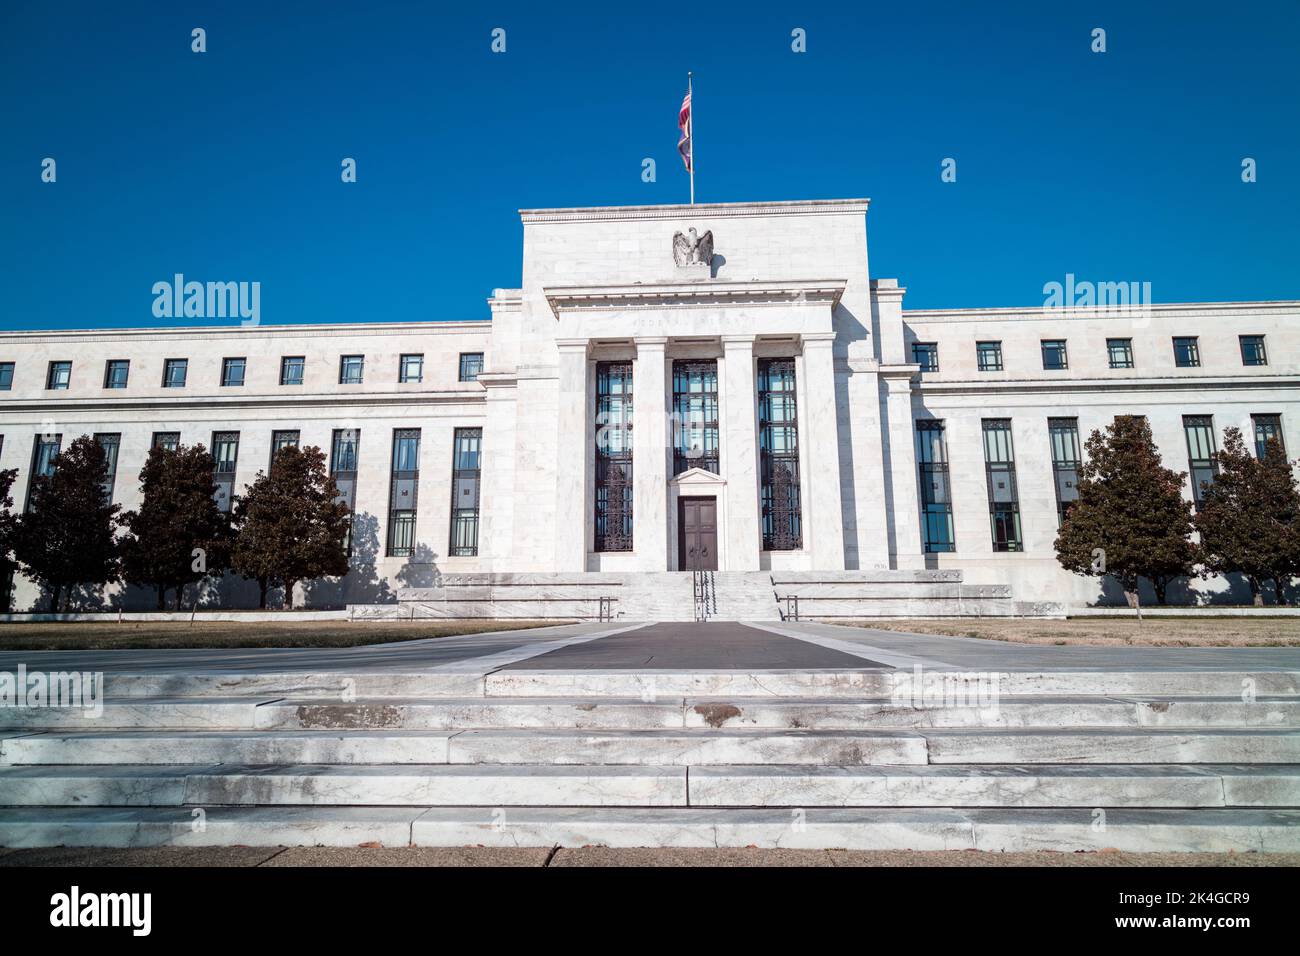 Das Marriner S. Eccles Federal Reserve Board Building in Washington, D.C. an einem sonnigen Wintertag. Weite Aufnahme vom Südeingang auf der Constitution Ave Stockfoto